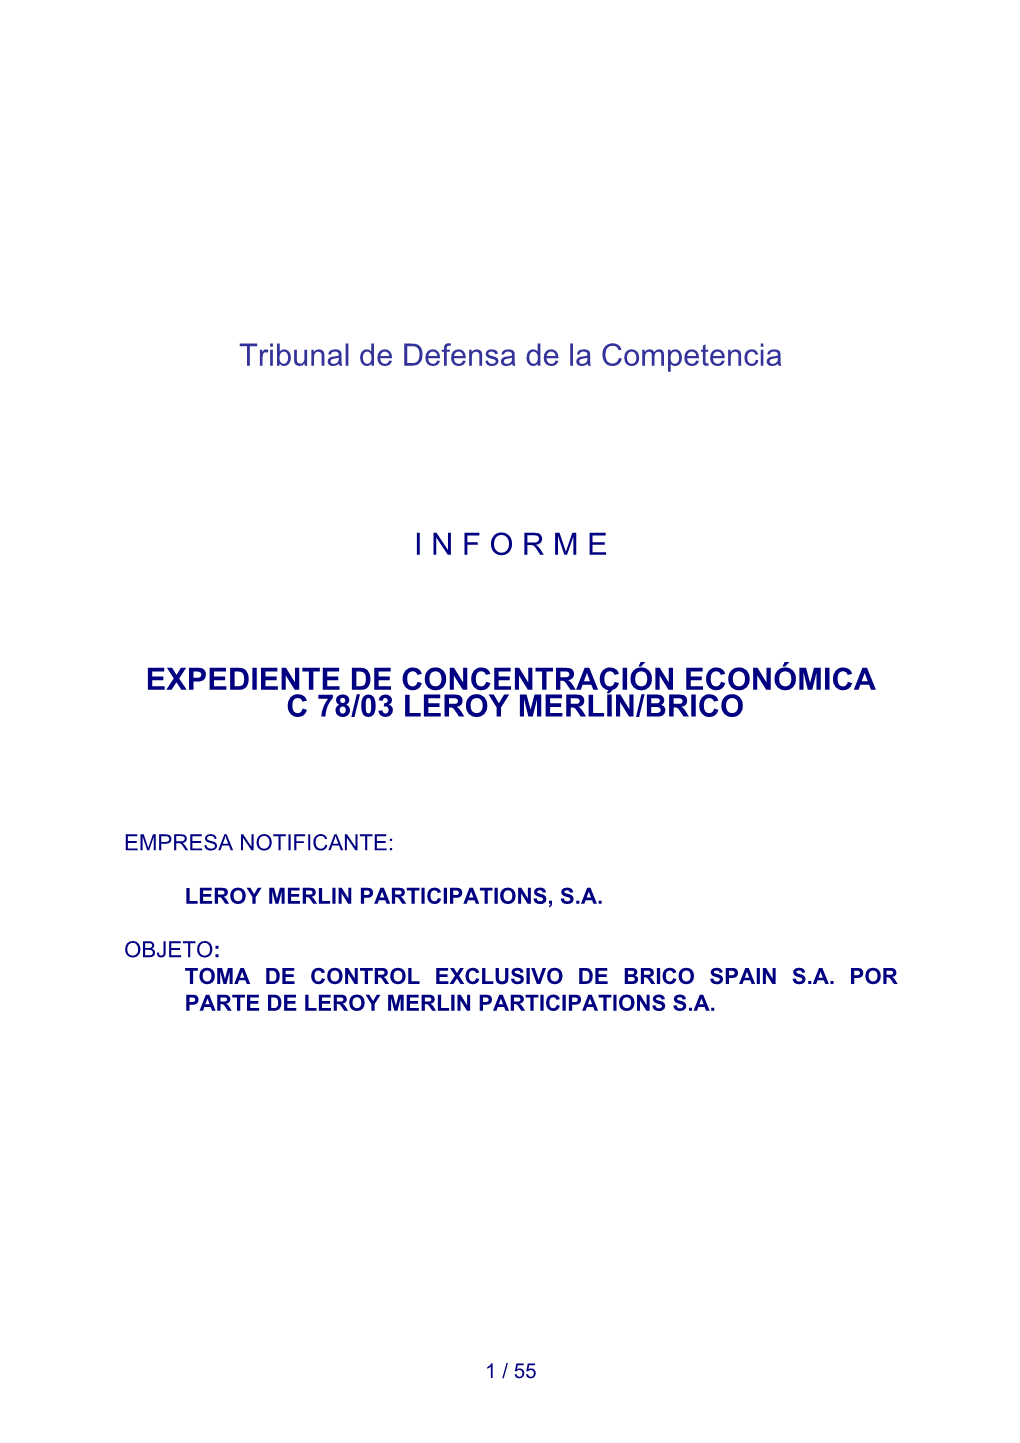 Informe Expediente De Concentración Económica C 78/03 Leroy Merlín/Brico